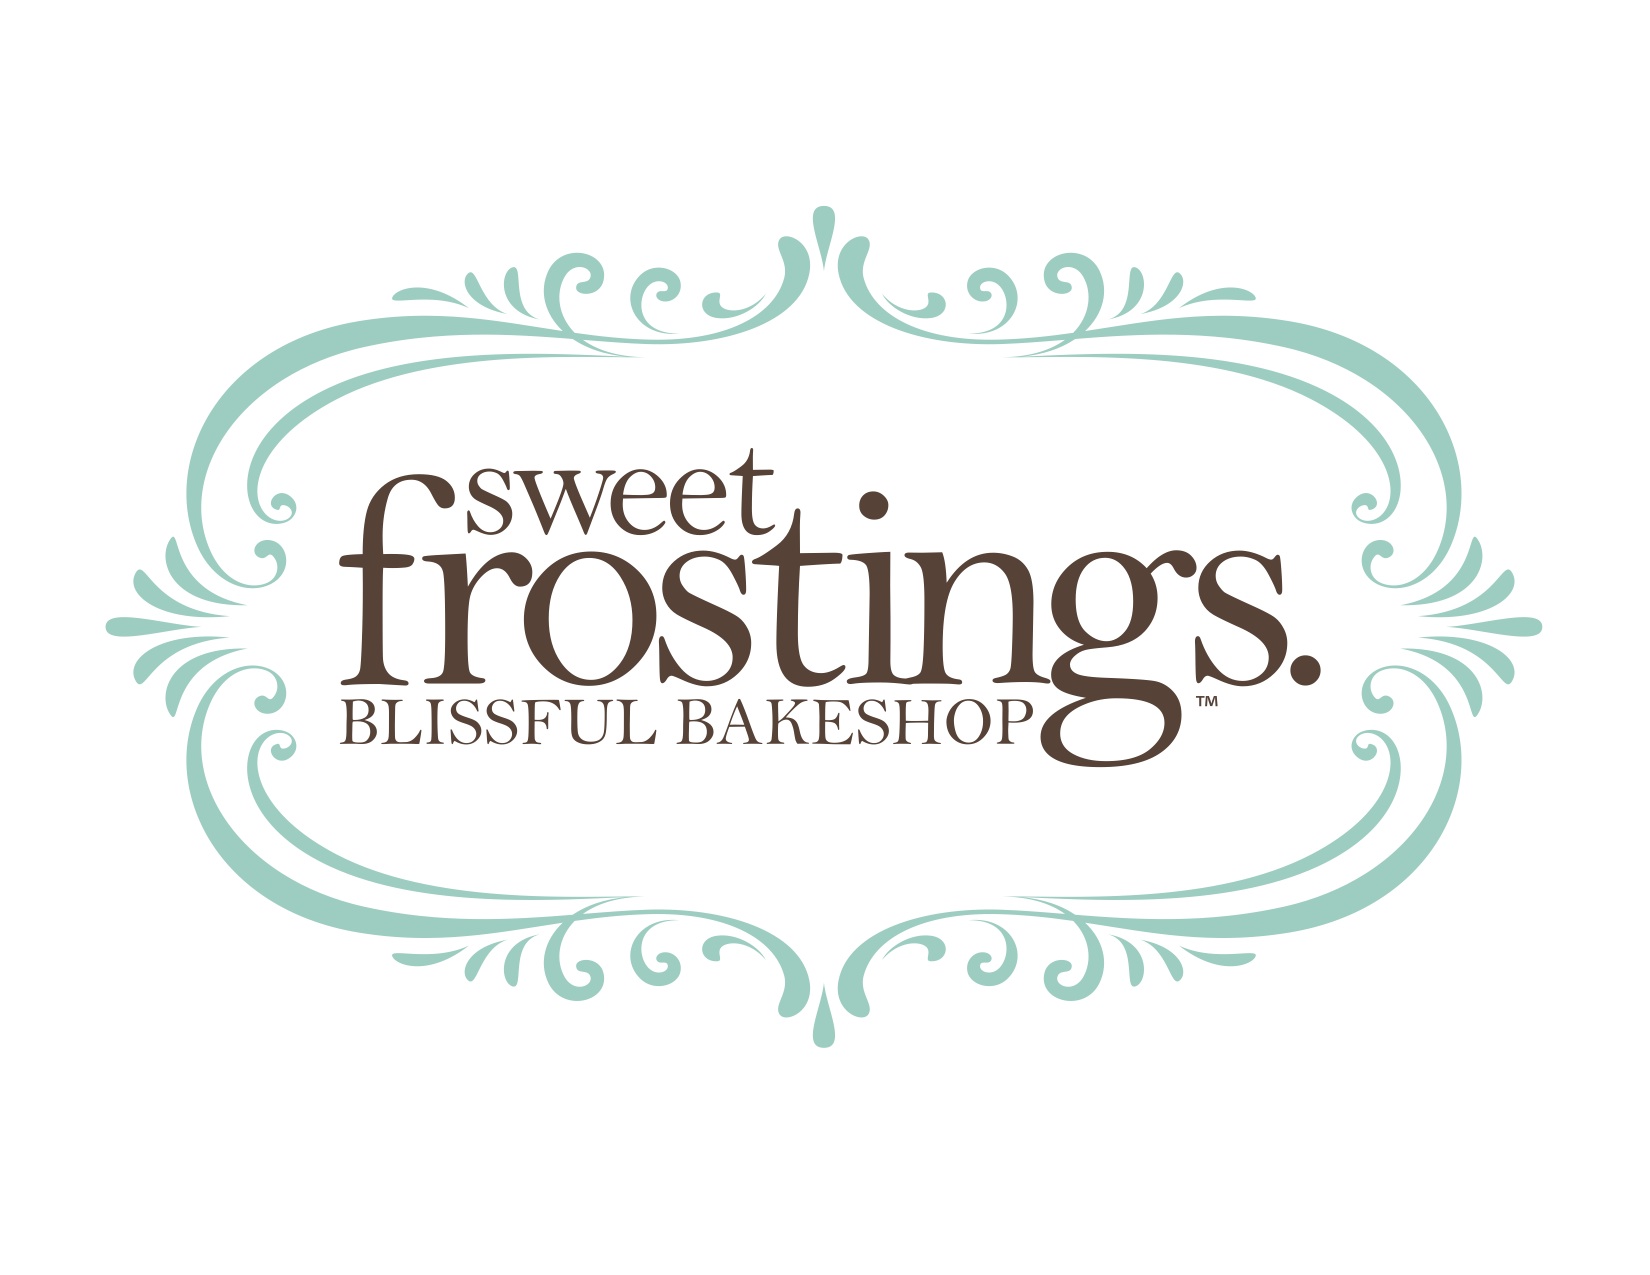 sweet frostings logo 